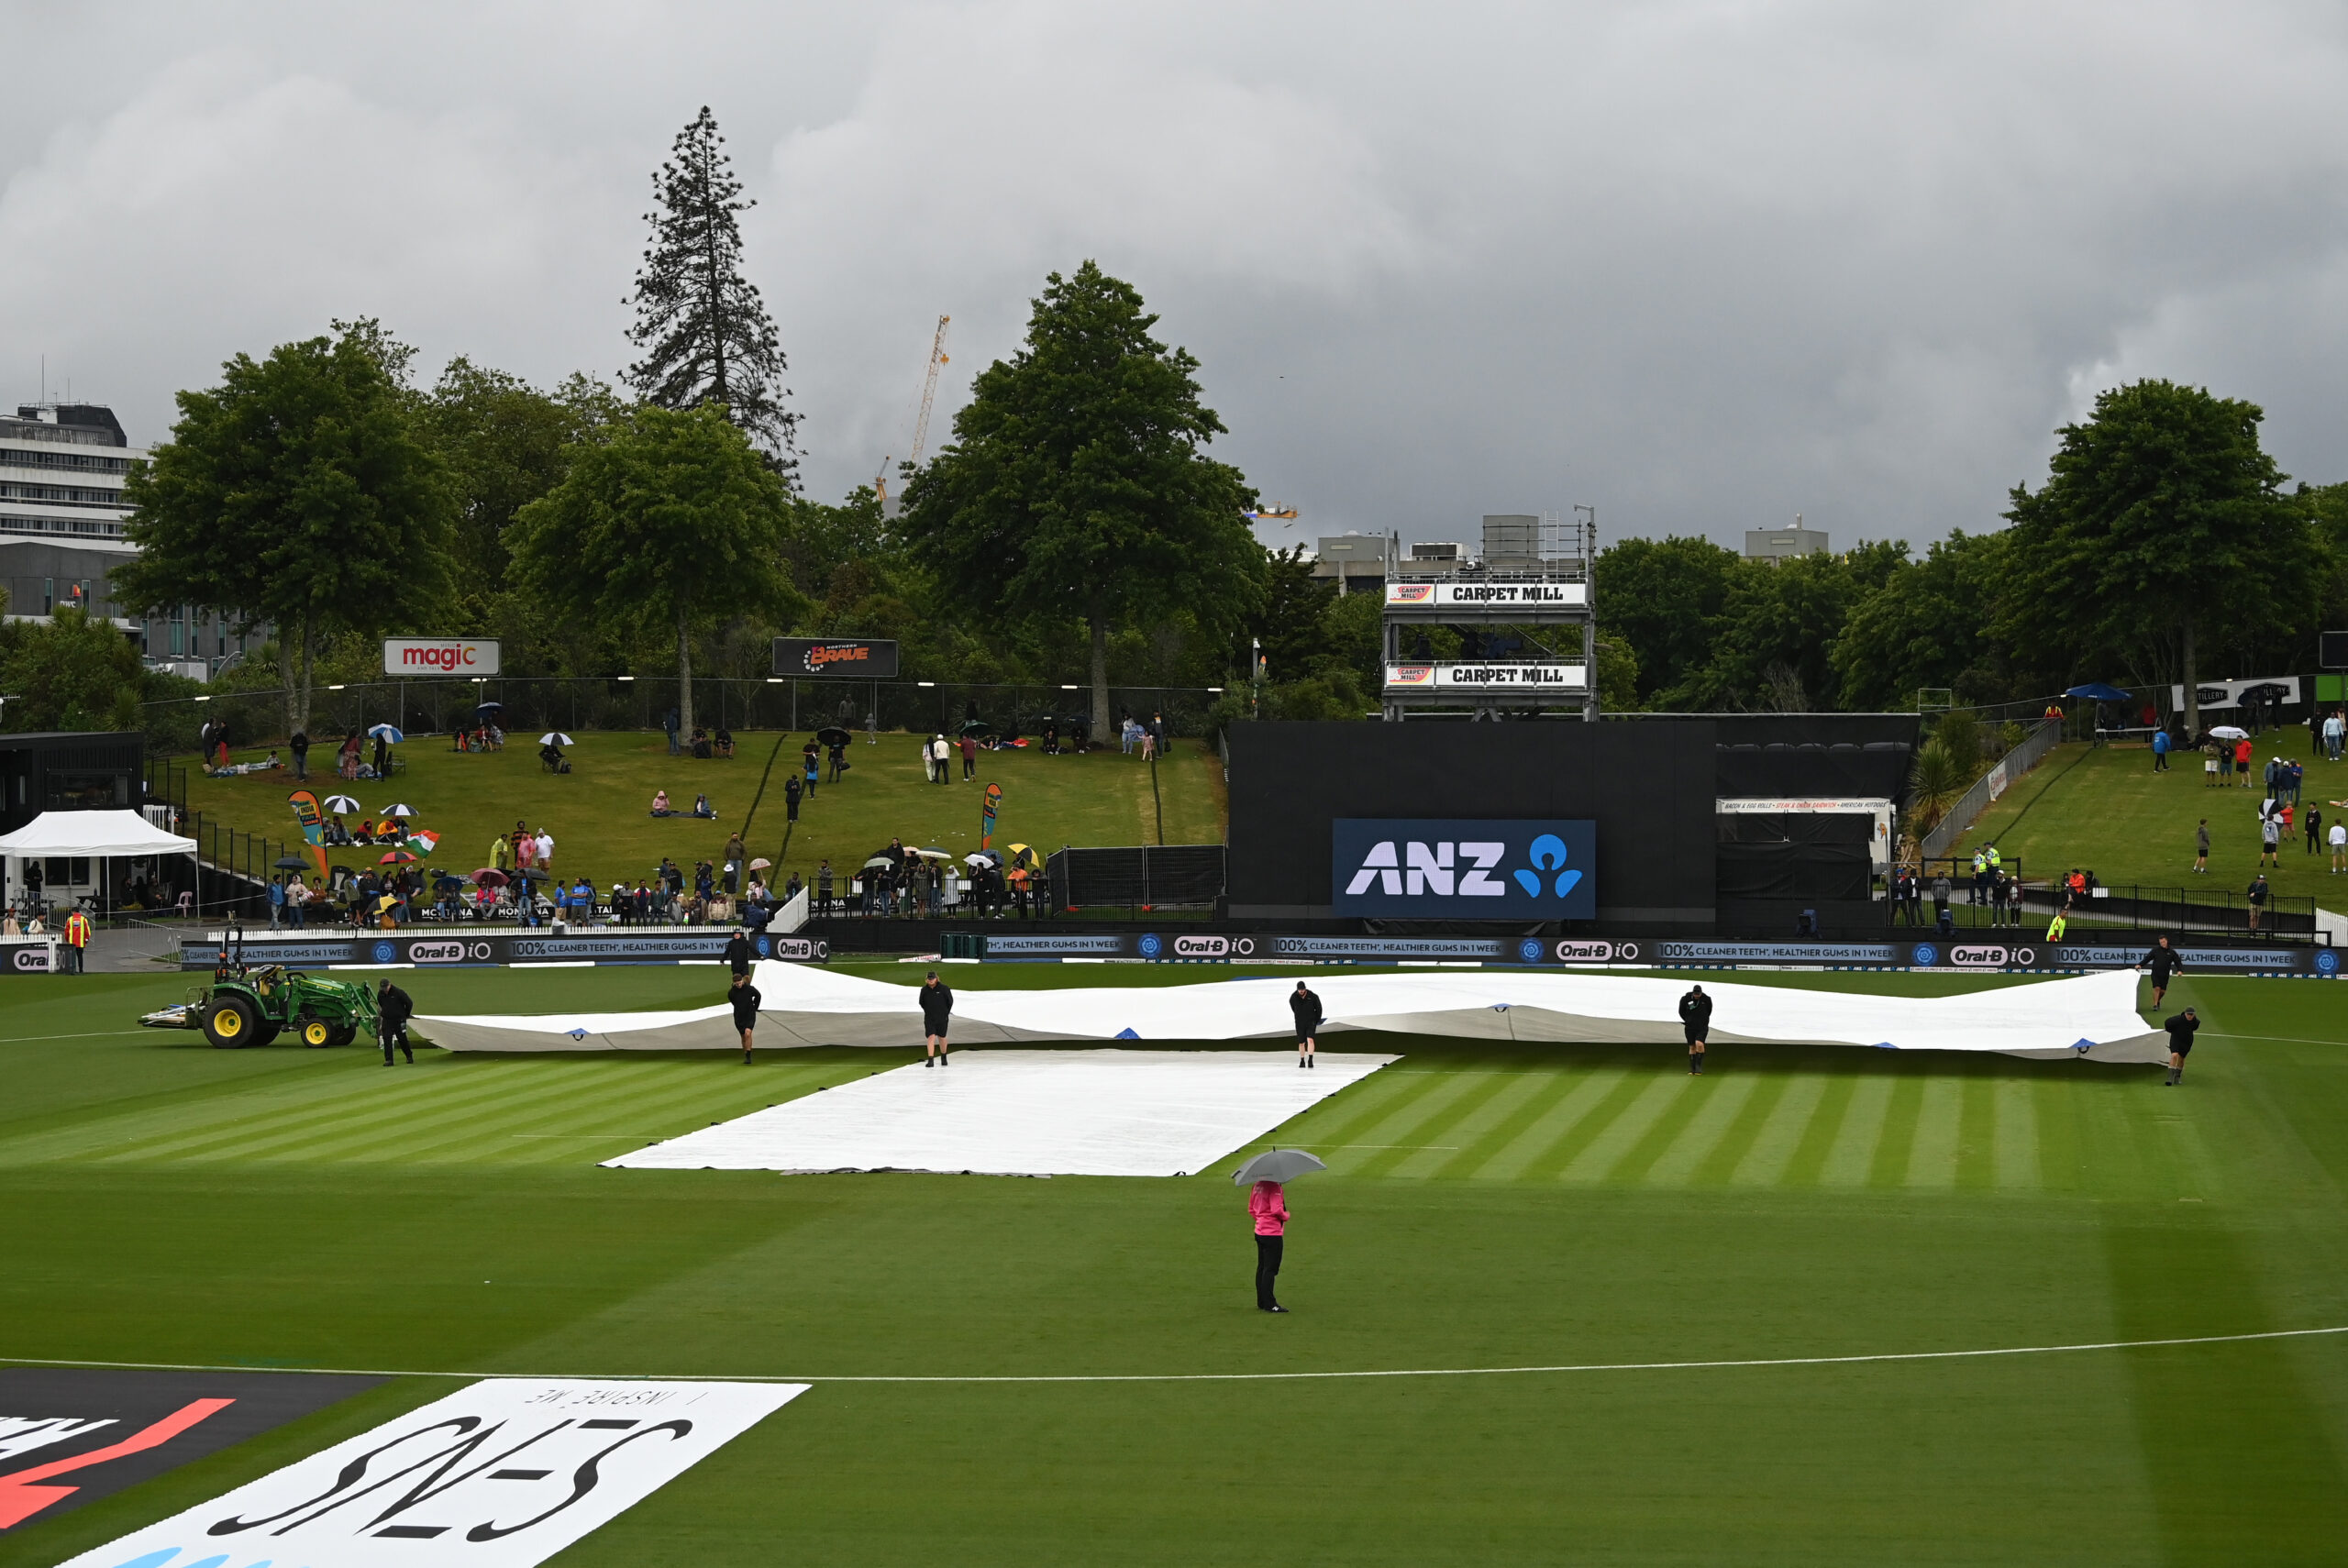 एक दिनी सीरीज : भारत और न्यूजीलैंड के बीच दूसरा मैच बारिश की भेंट चढ़ा